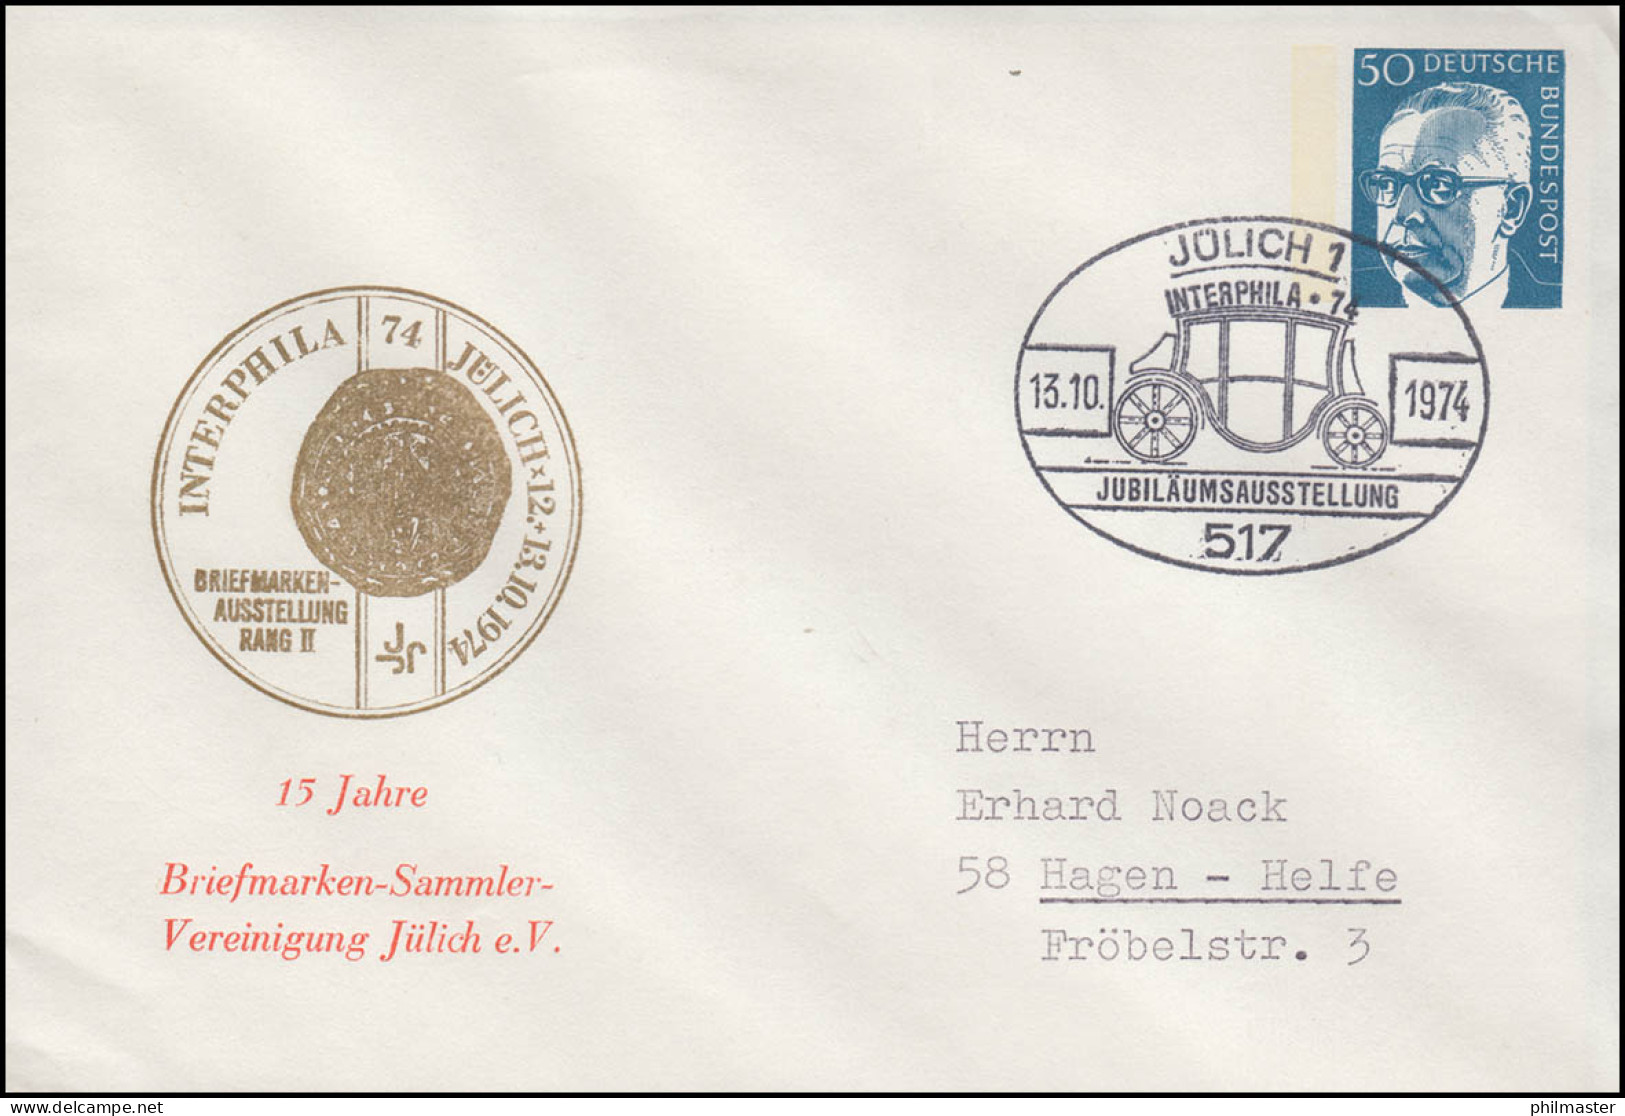 PU 54/8 Interphila Jülich, Heinemann 50 Pf., 13.10.74 - Private Covers - Mint